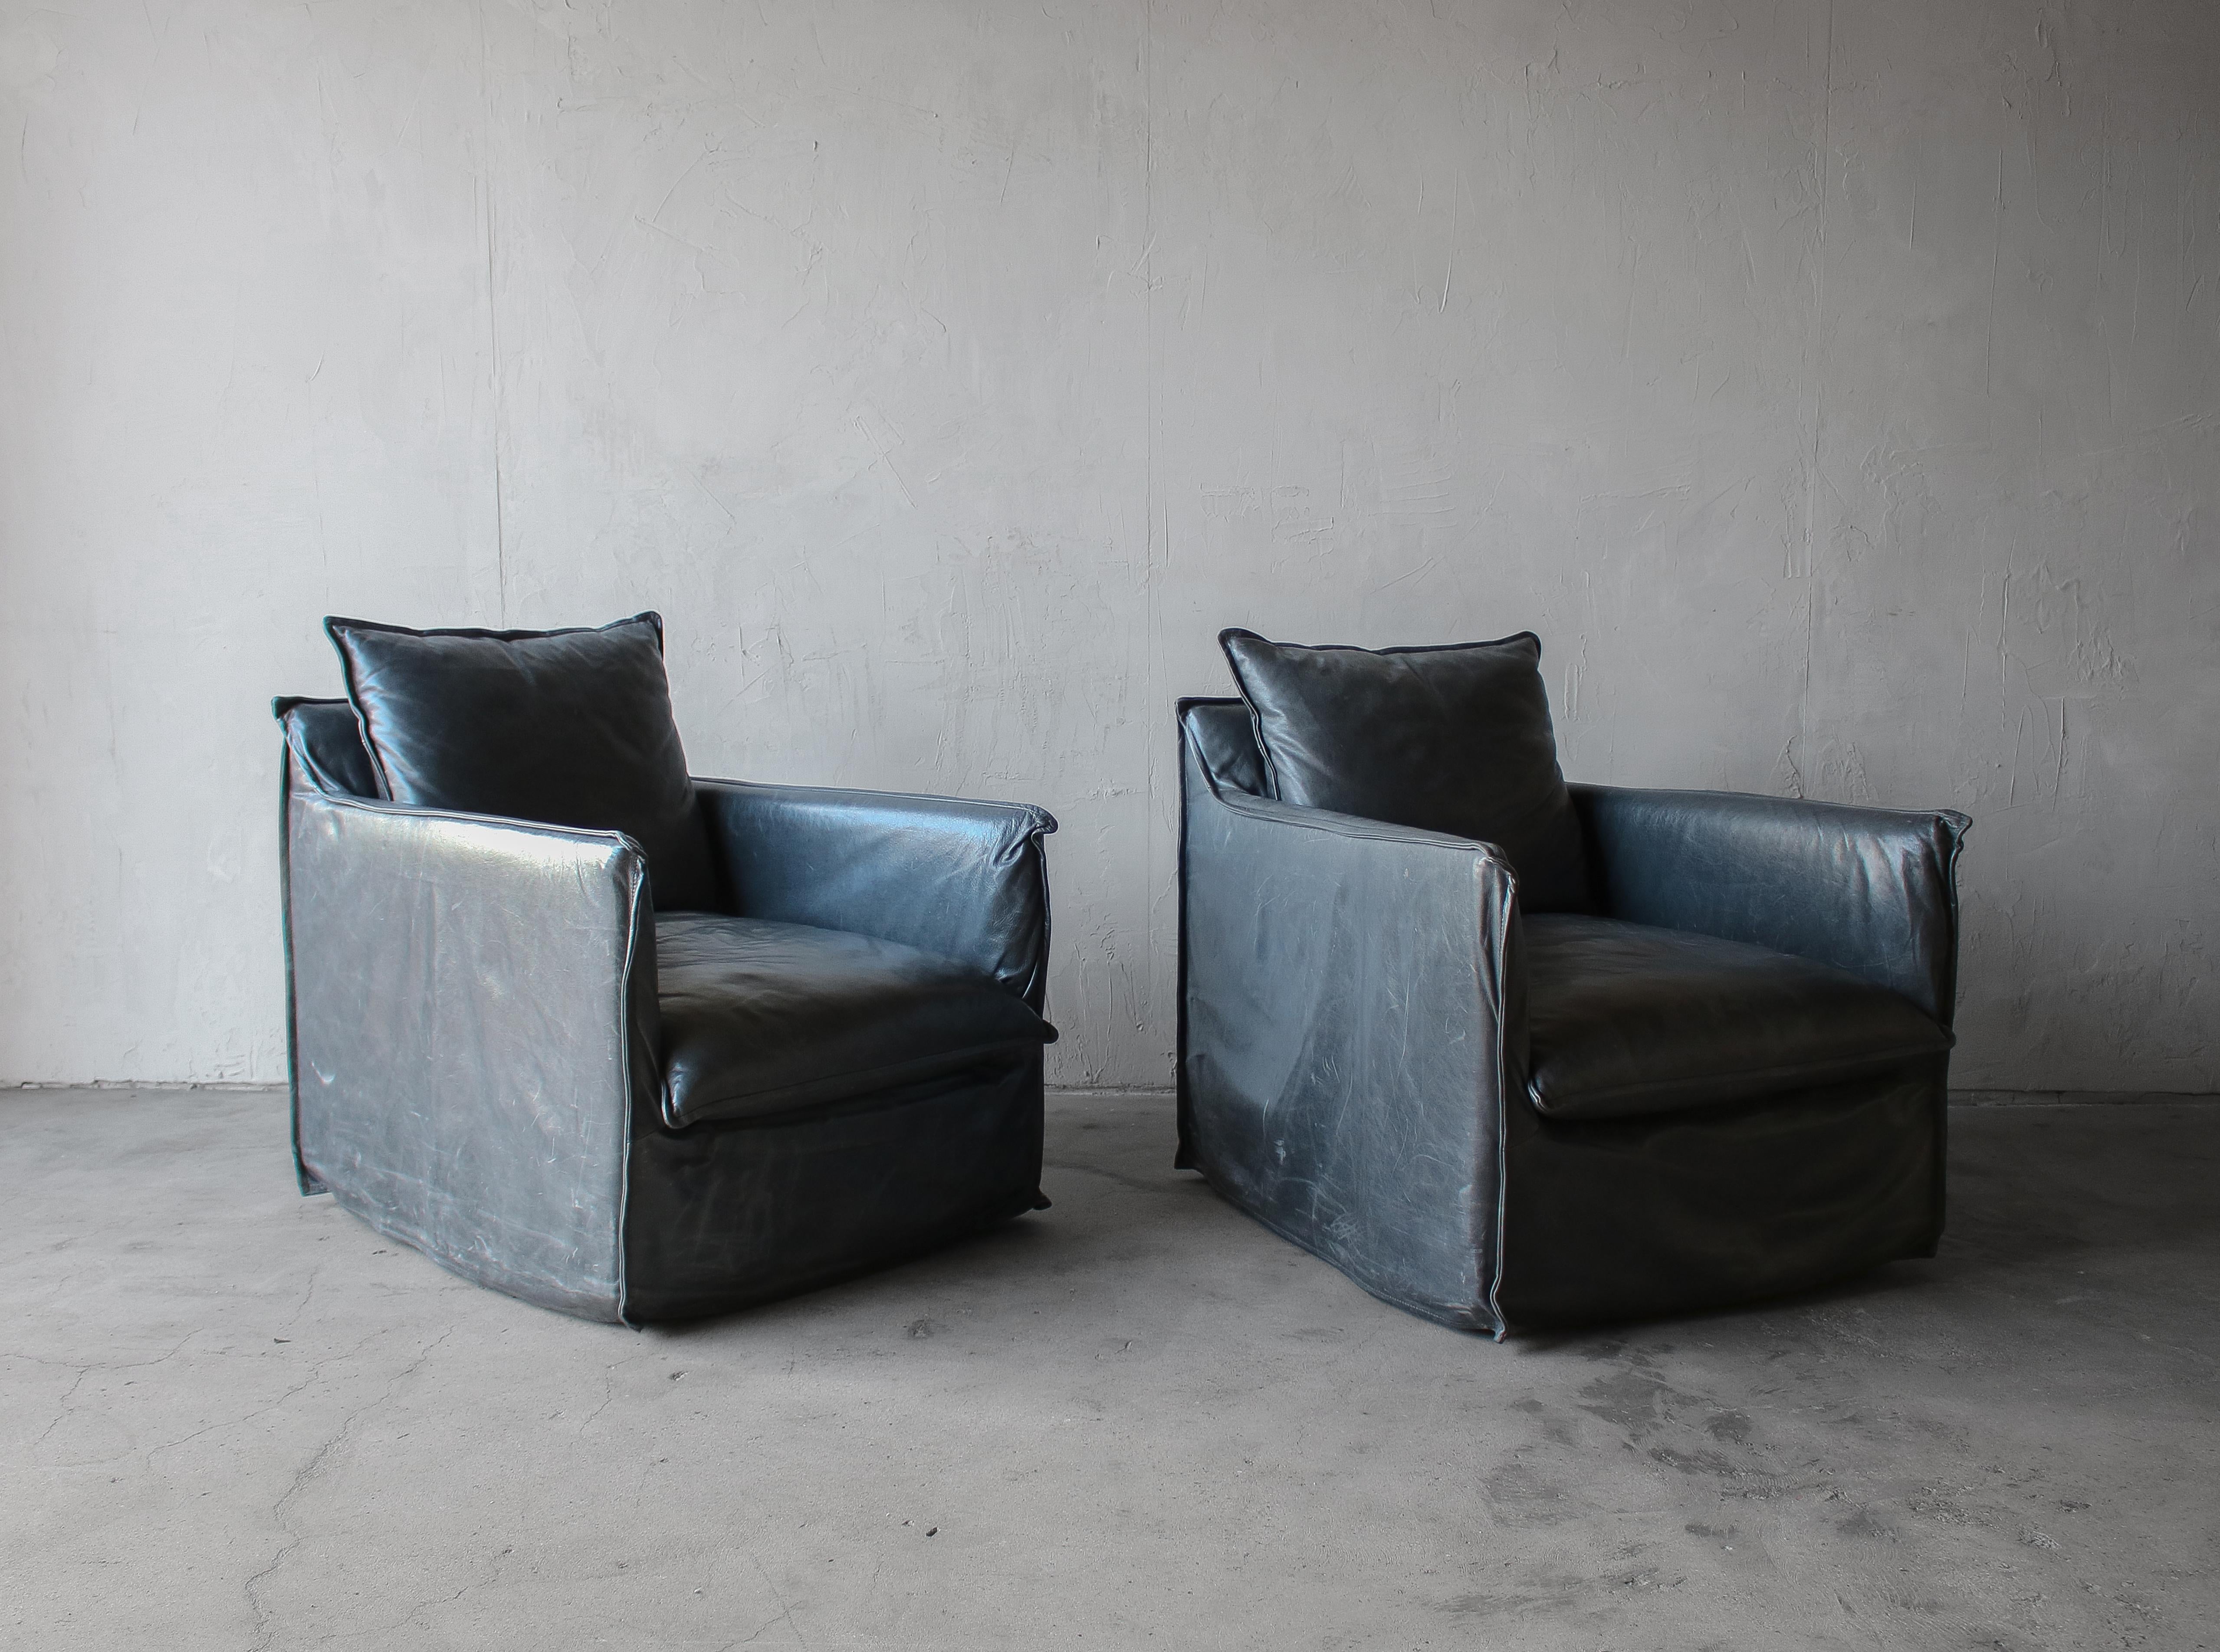 Schönes Paar Leder-Drehstühle.  Die Stühle sind mit einem einzigartigen Lederbezug versehen, der ihnen einen einladenden, sackartigen Charakter verleiht.  Das Leder ist butterweich und in einem dunklen Rauchblau gehalten, einer echten Mischung aus